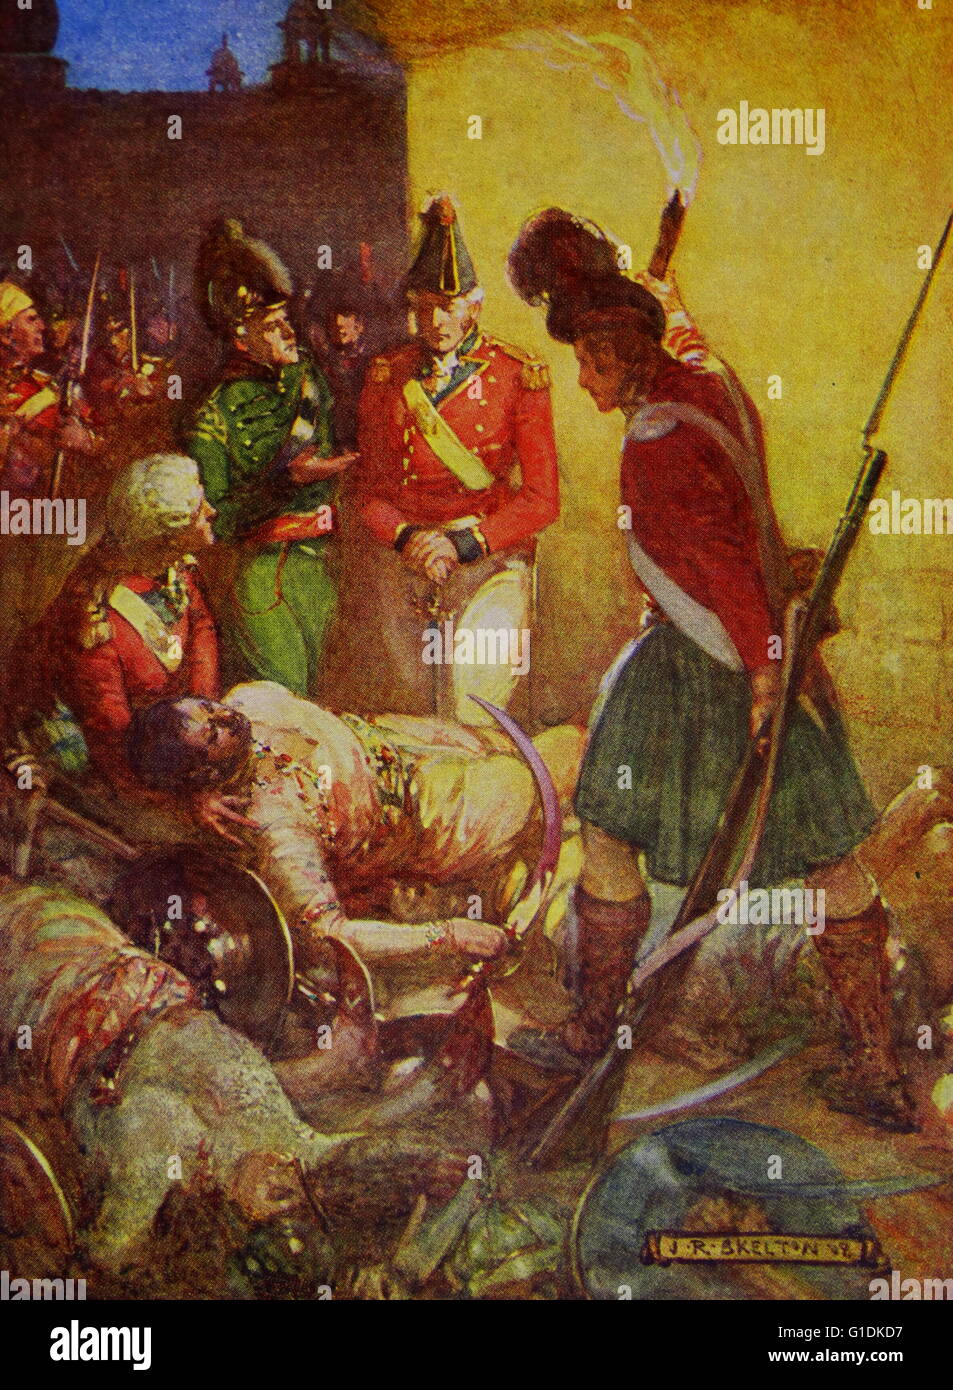 Gemälde des Sultans Körper unter seinen Anhängern des britischen Künstlers Joseph Ratcliffe Skelton (1865-1888). Vom Jahre 1883 Stockfoto